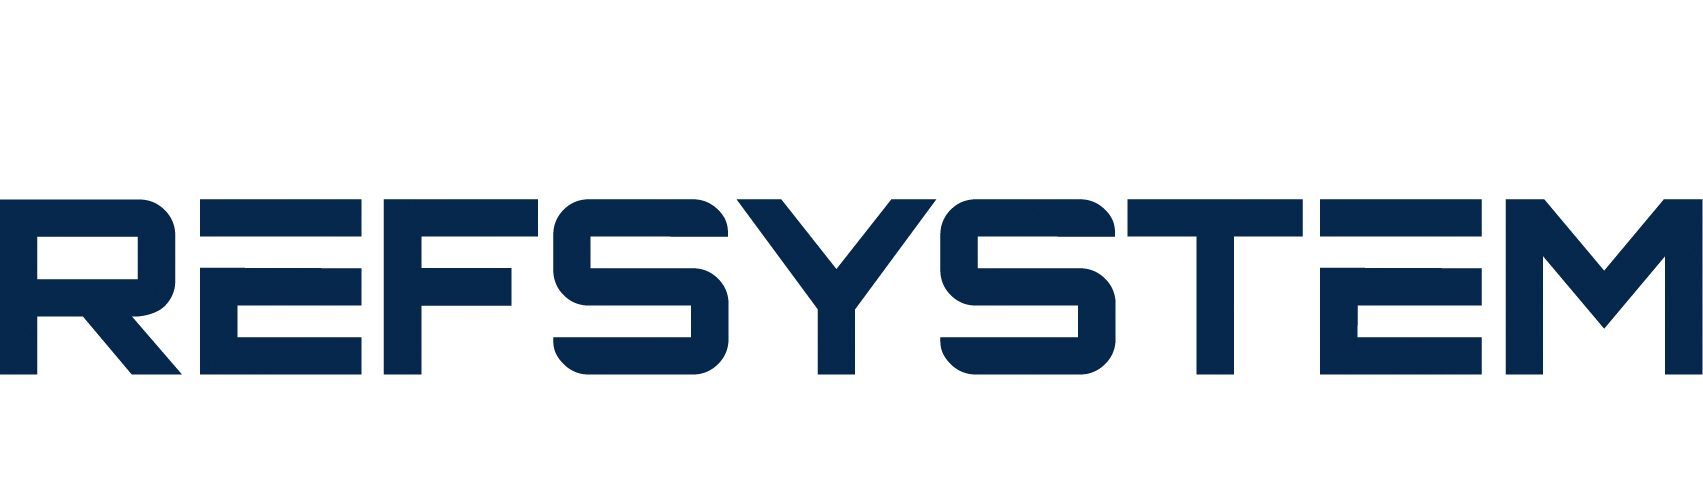 Refsystem Logo